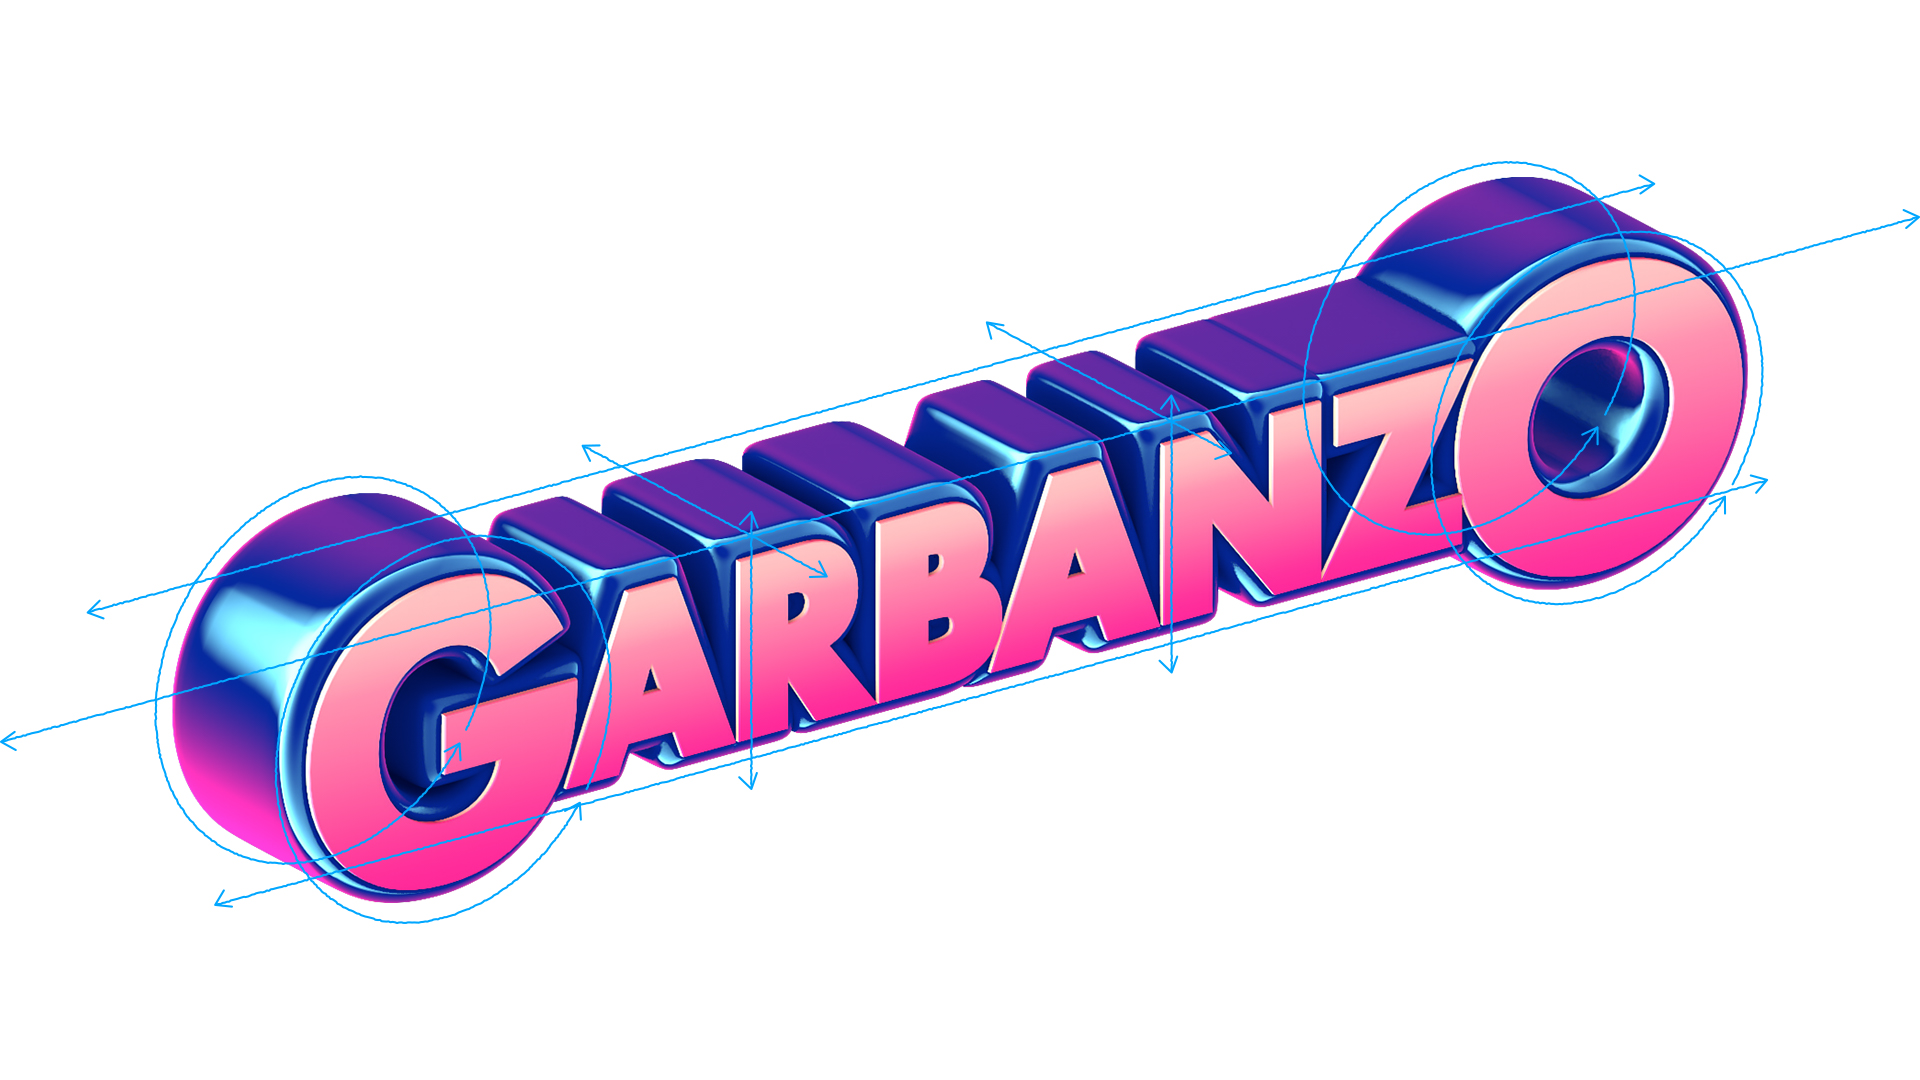 Garbanzo Rebrand 90